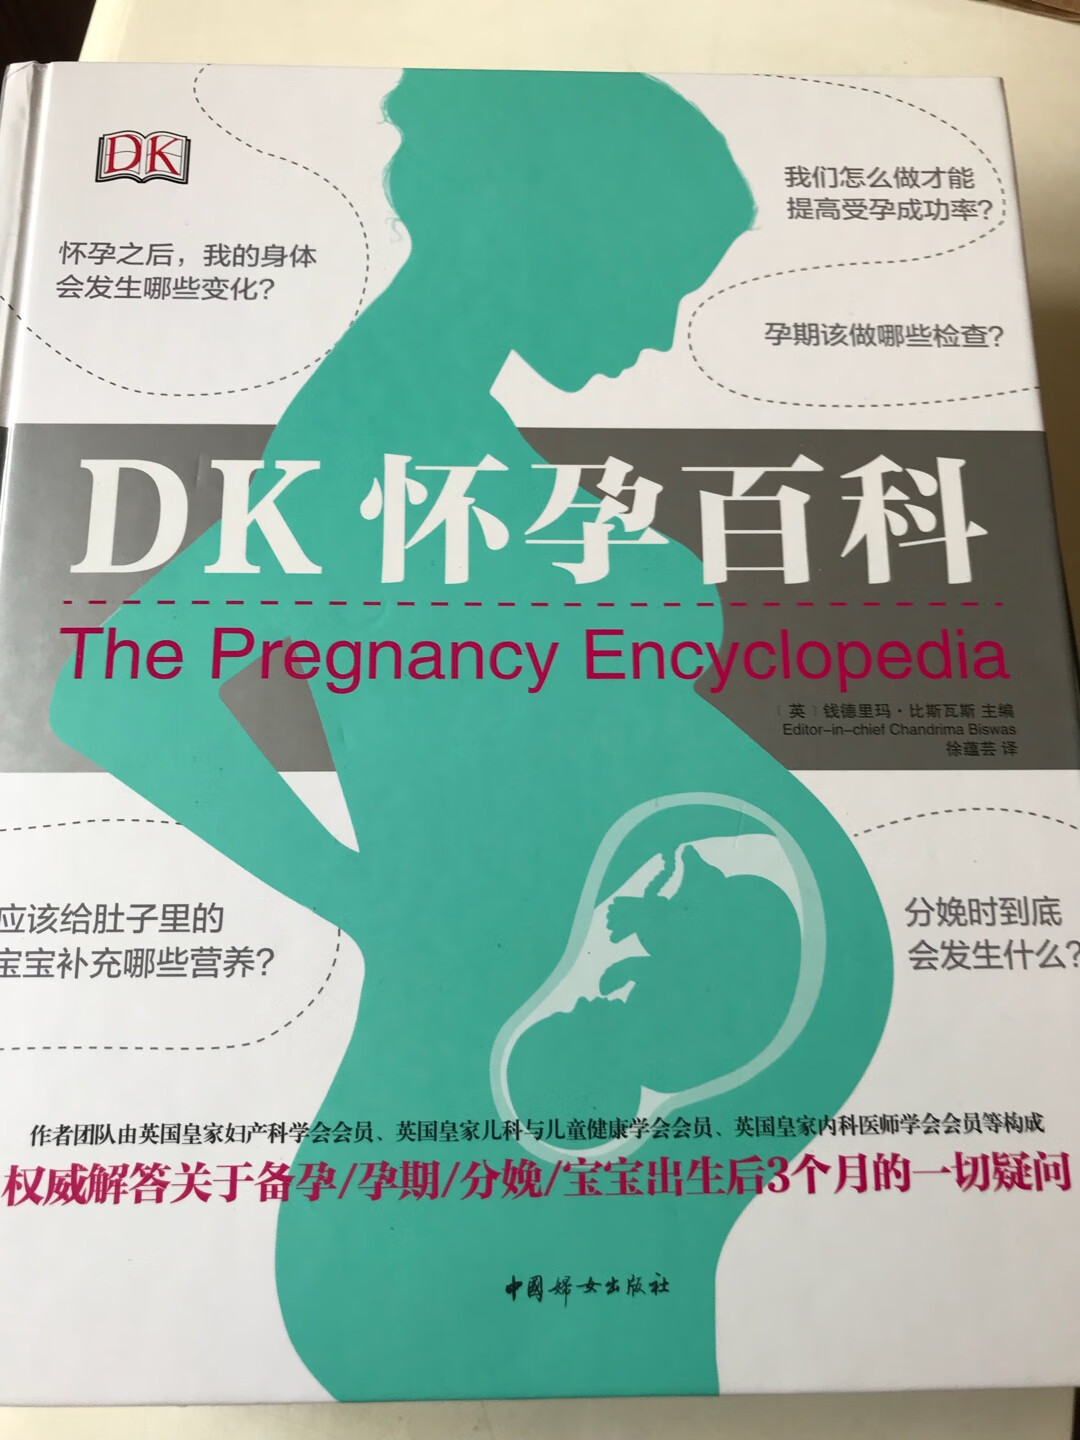 孕中期才发现这本书，评价很高。收到书，质量很好。里面的内容看目录感觉还是实用的。希望有帮助。